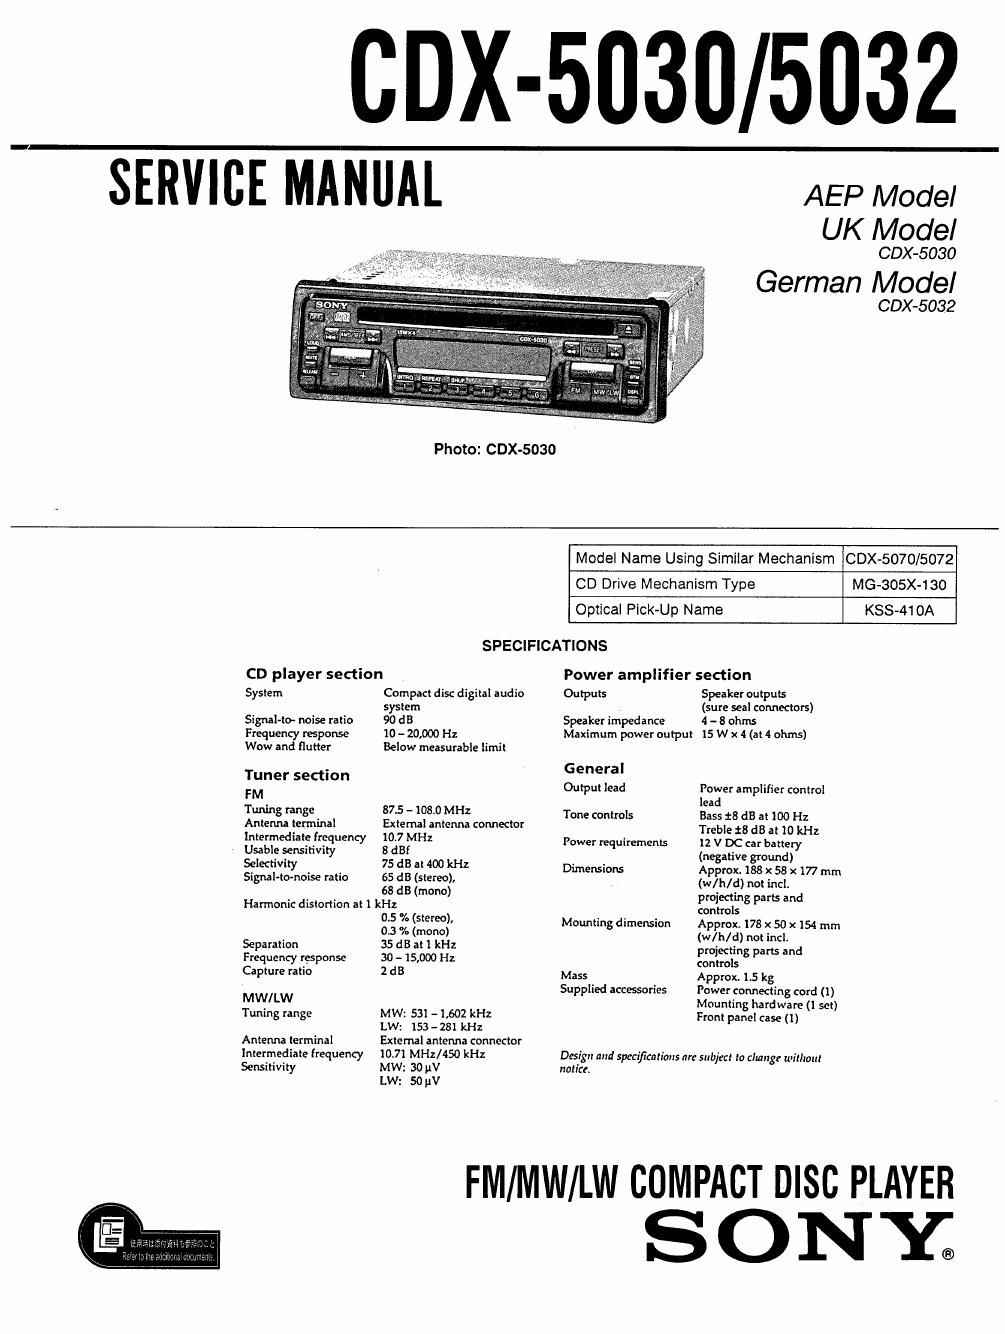 sony cdx 5030 service manual